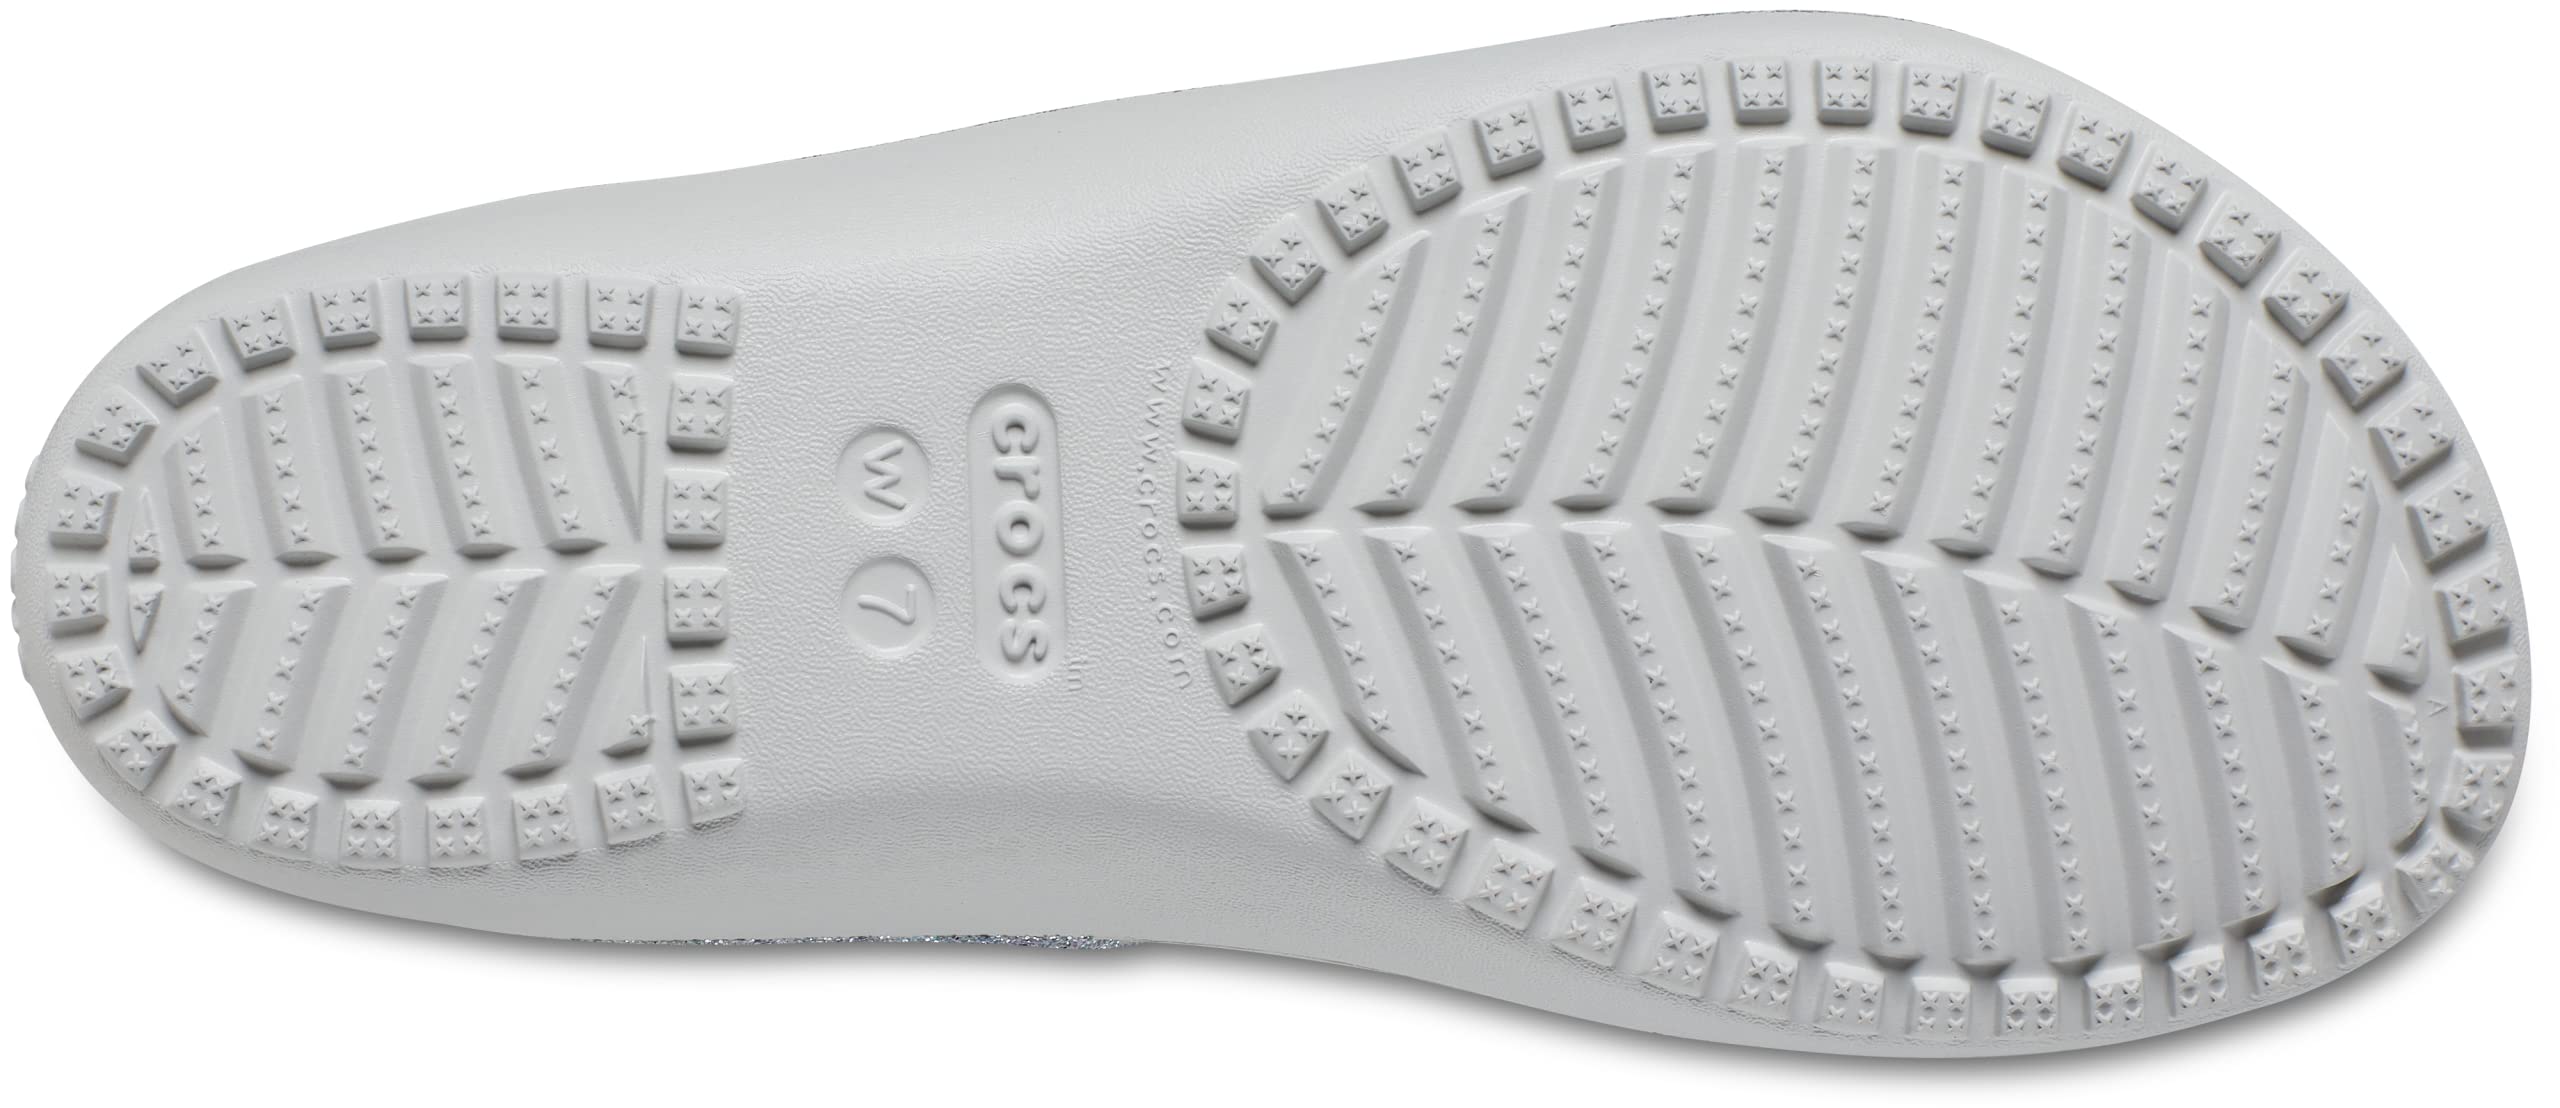 Crocs Women's Kadee Ii Sandals